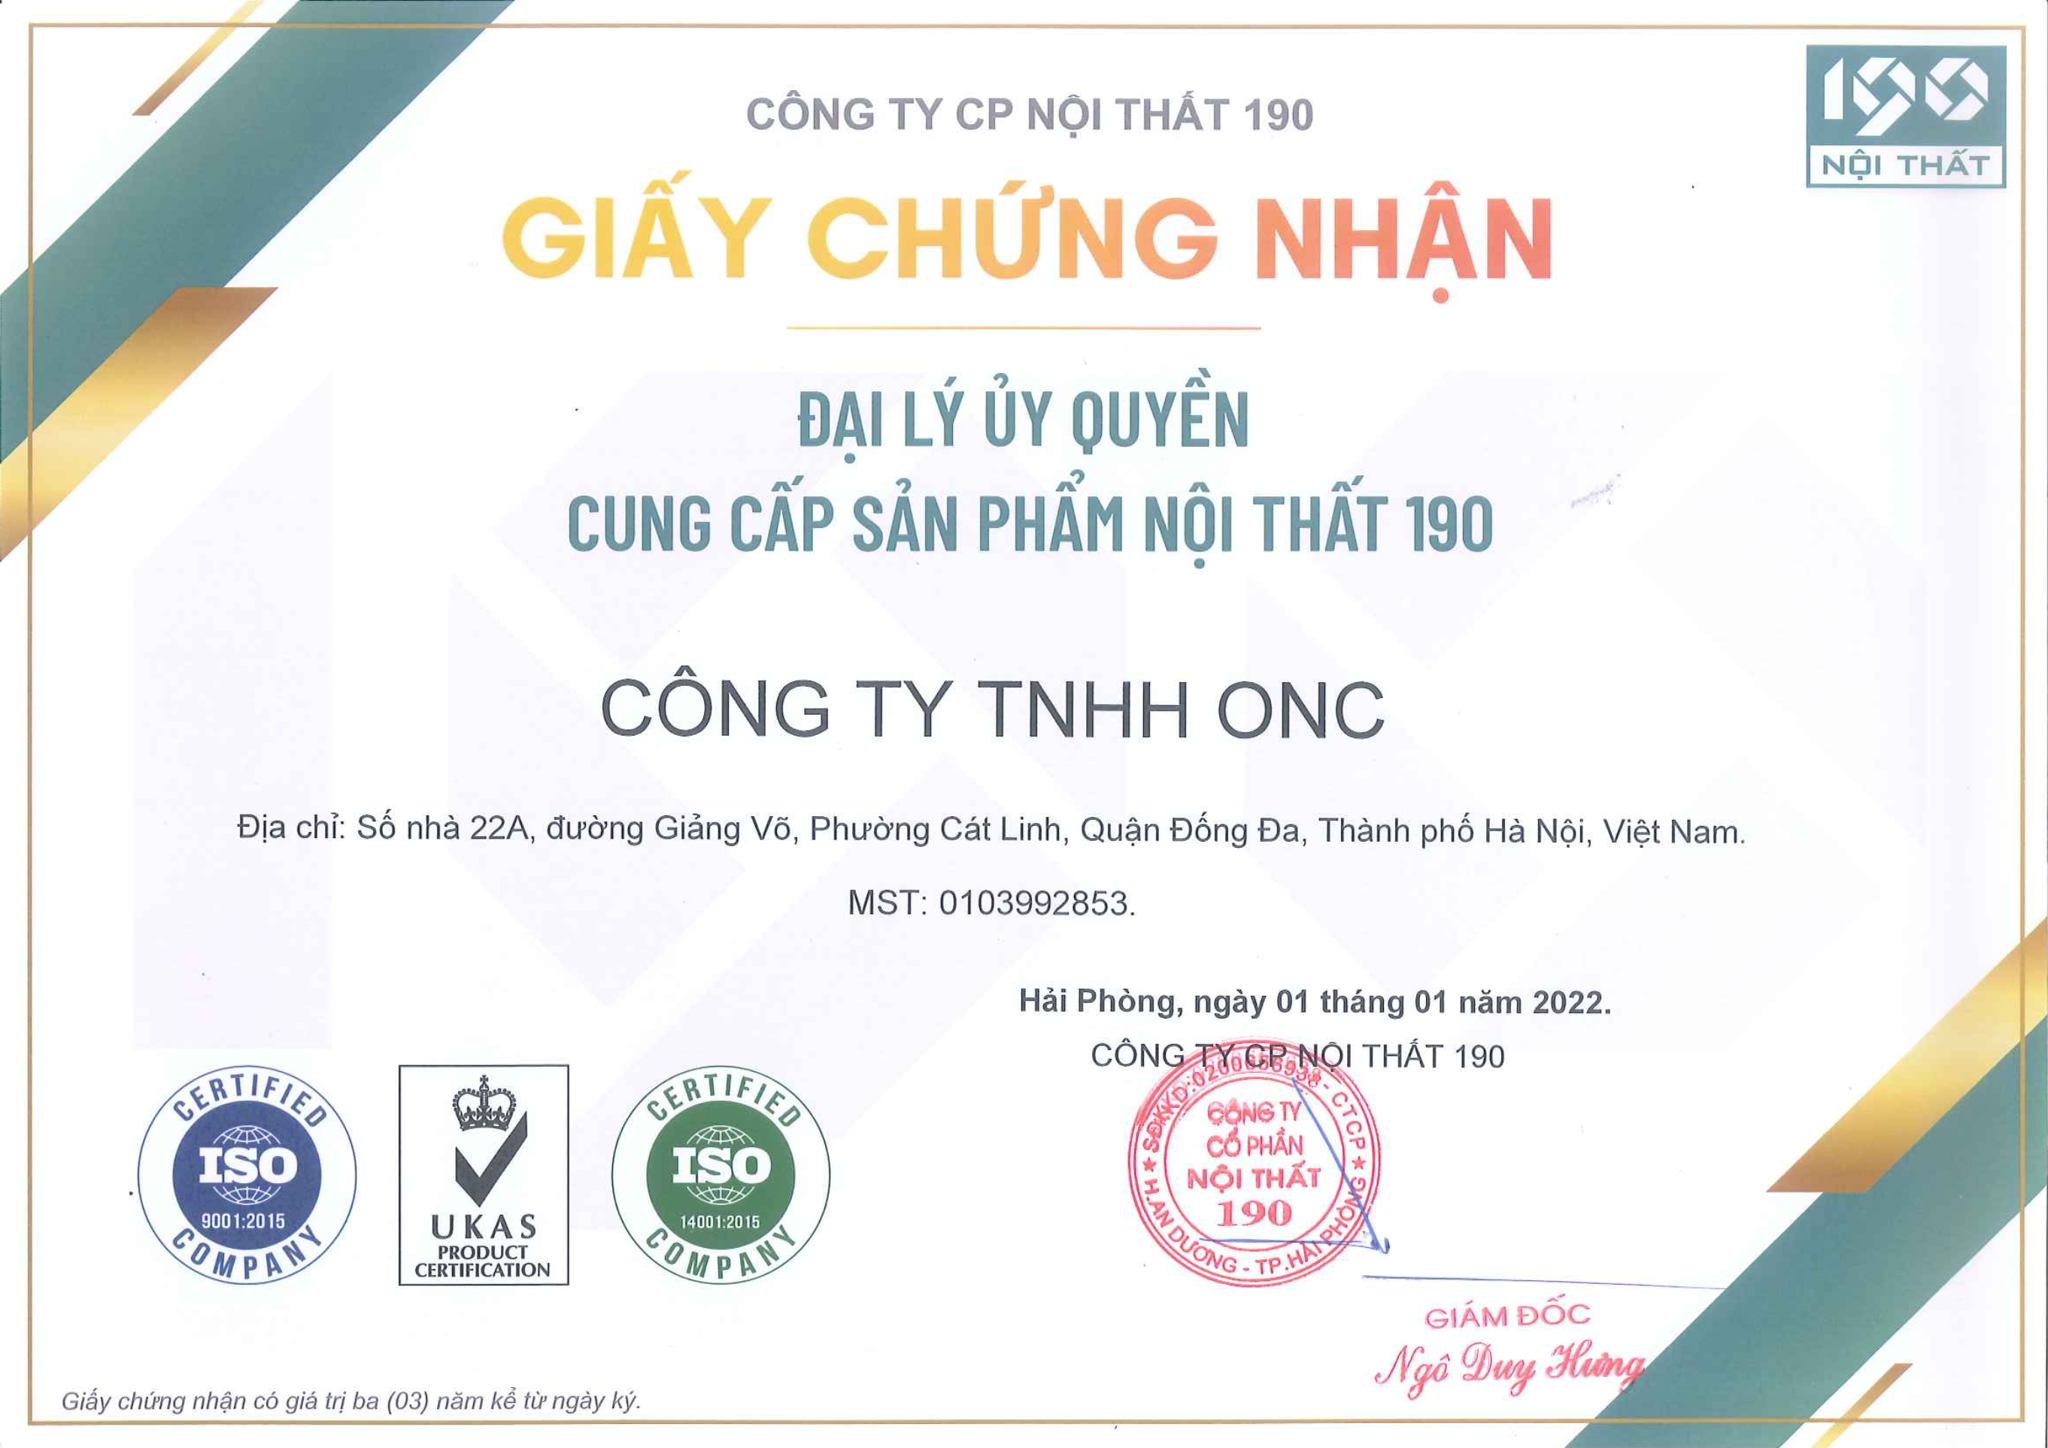 Giấy chứng nhận ONC là đại lý chính thức của Nội Thất 190